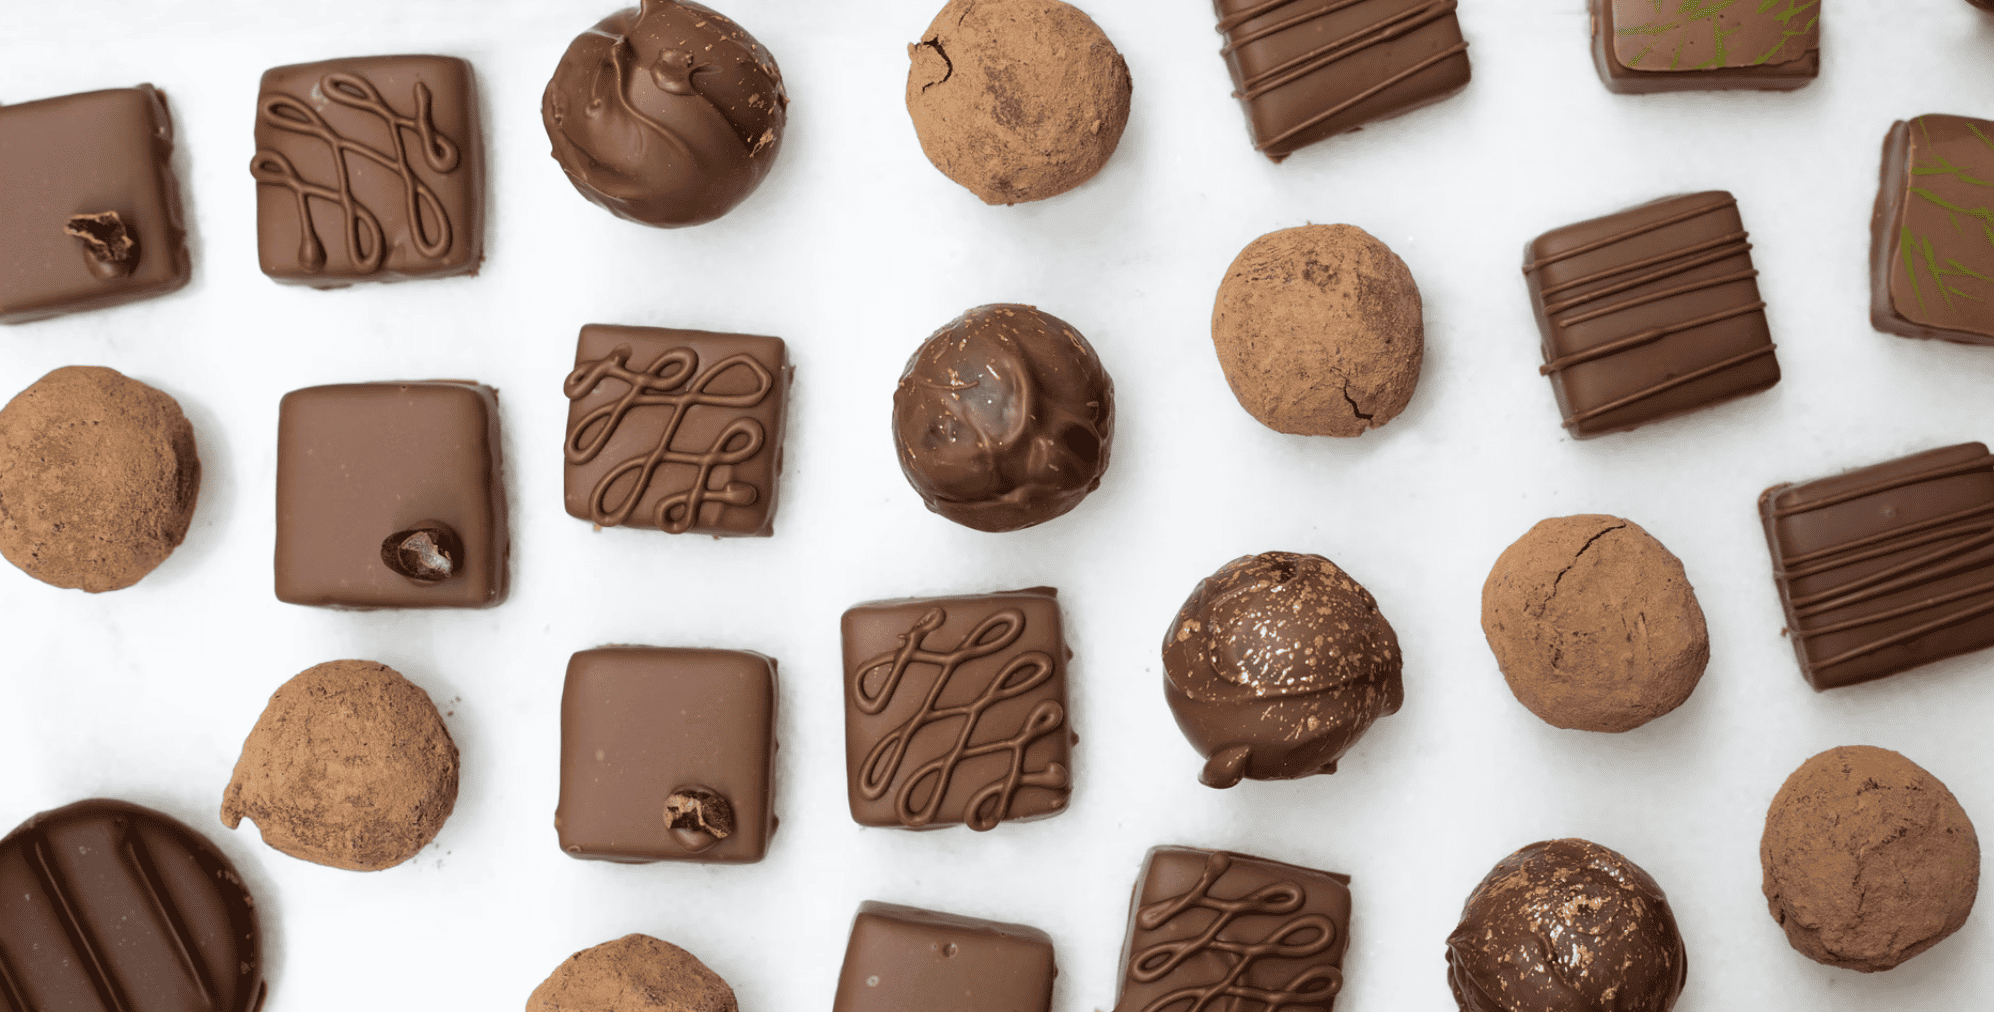 Liste der 3 größten Hersteller für Schokolade in der Schweiz